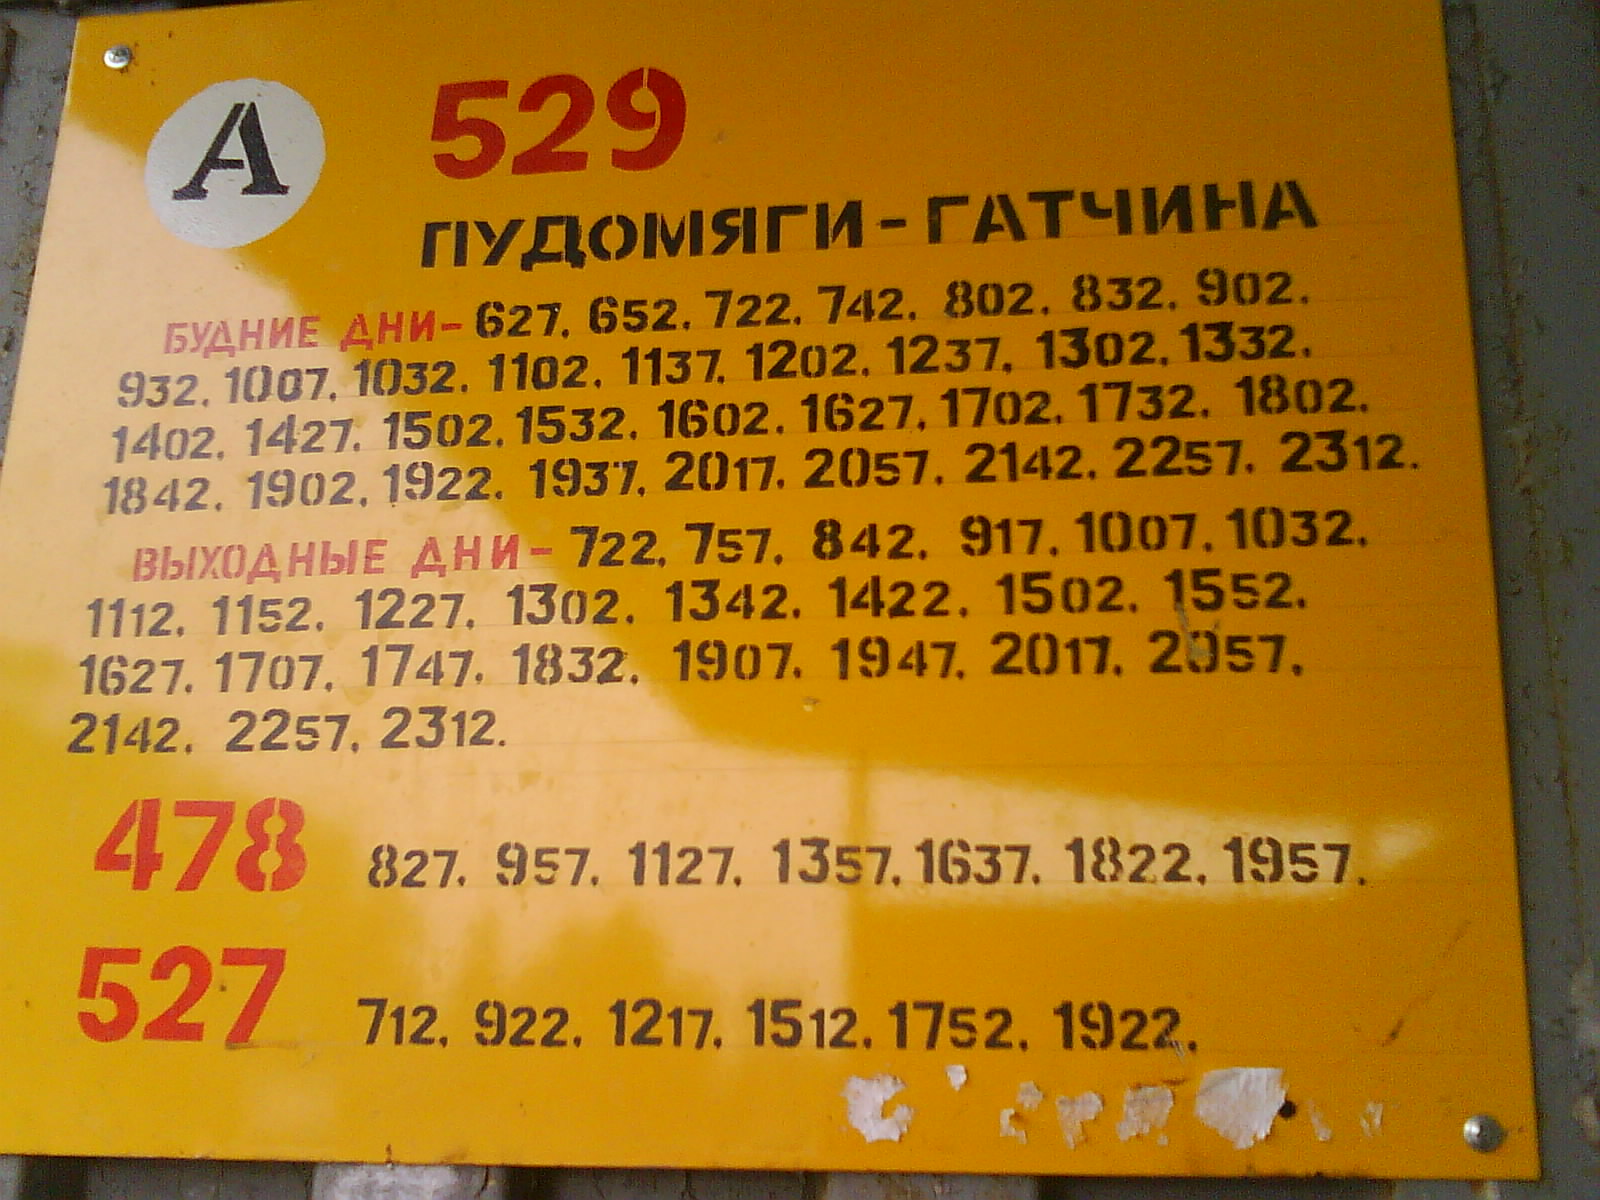 Автобус 529 павловск гатчина расписание на сегодня